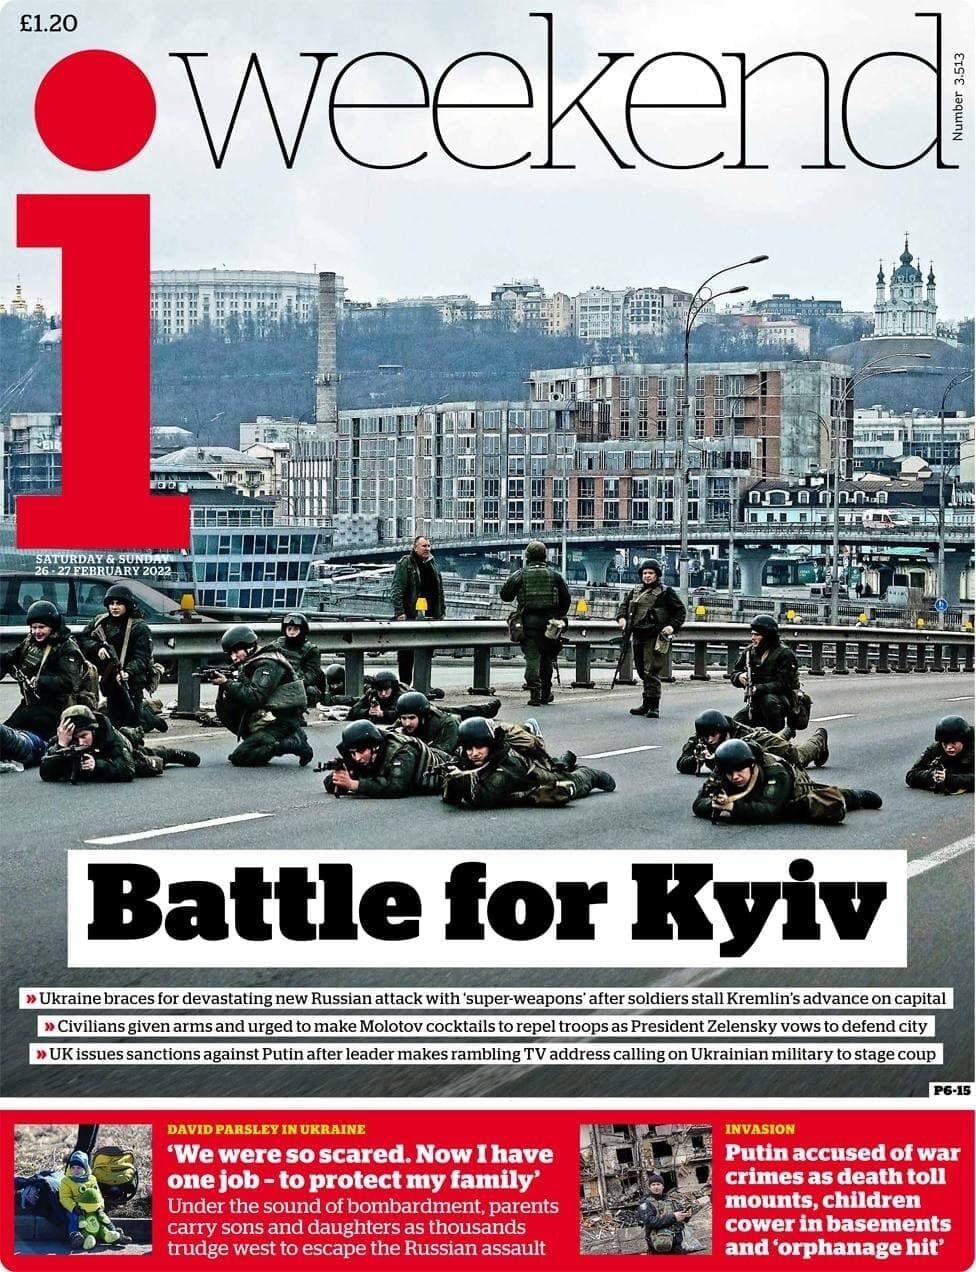 Битва за Киев длилась 25-26 февраля.